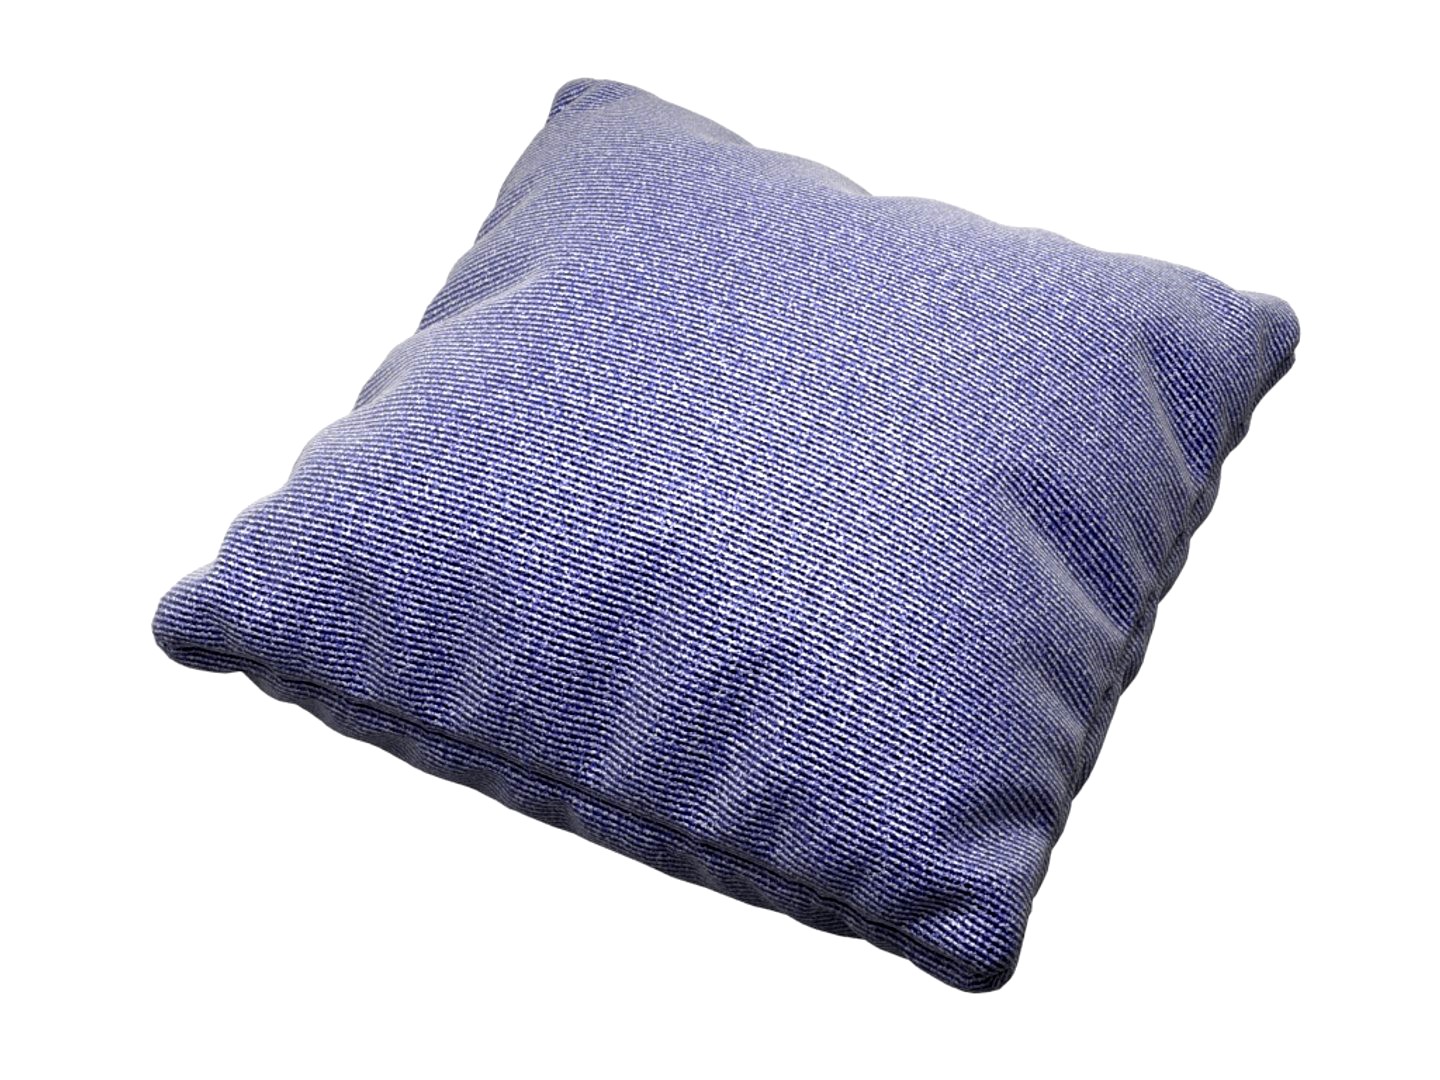 Blue denim pillow